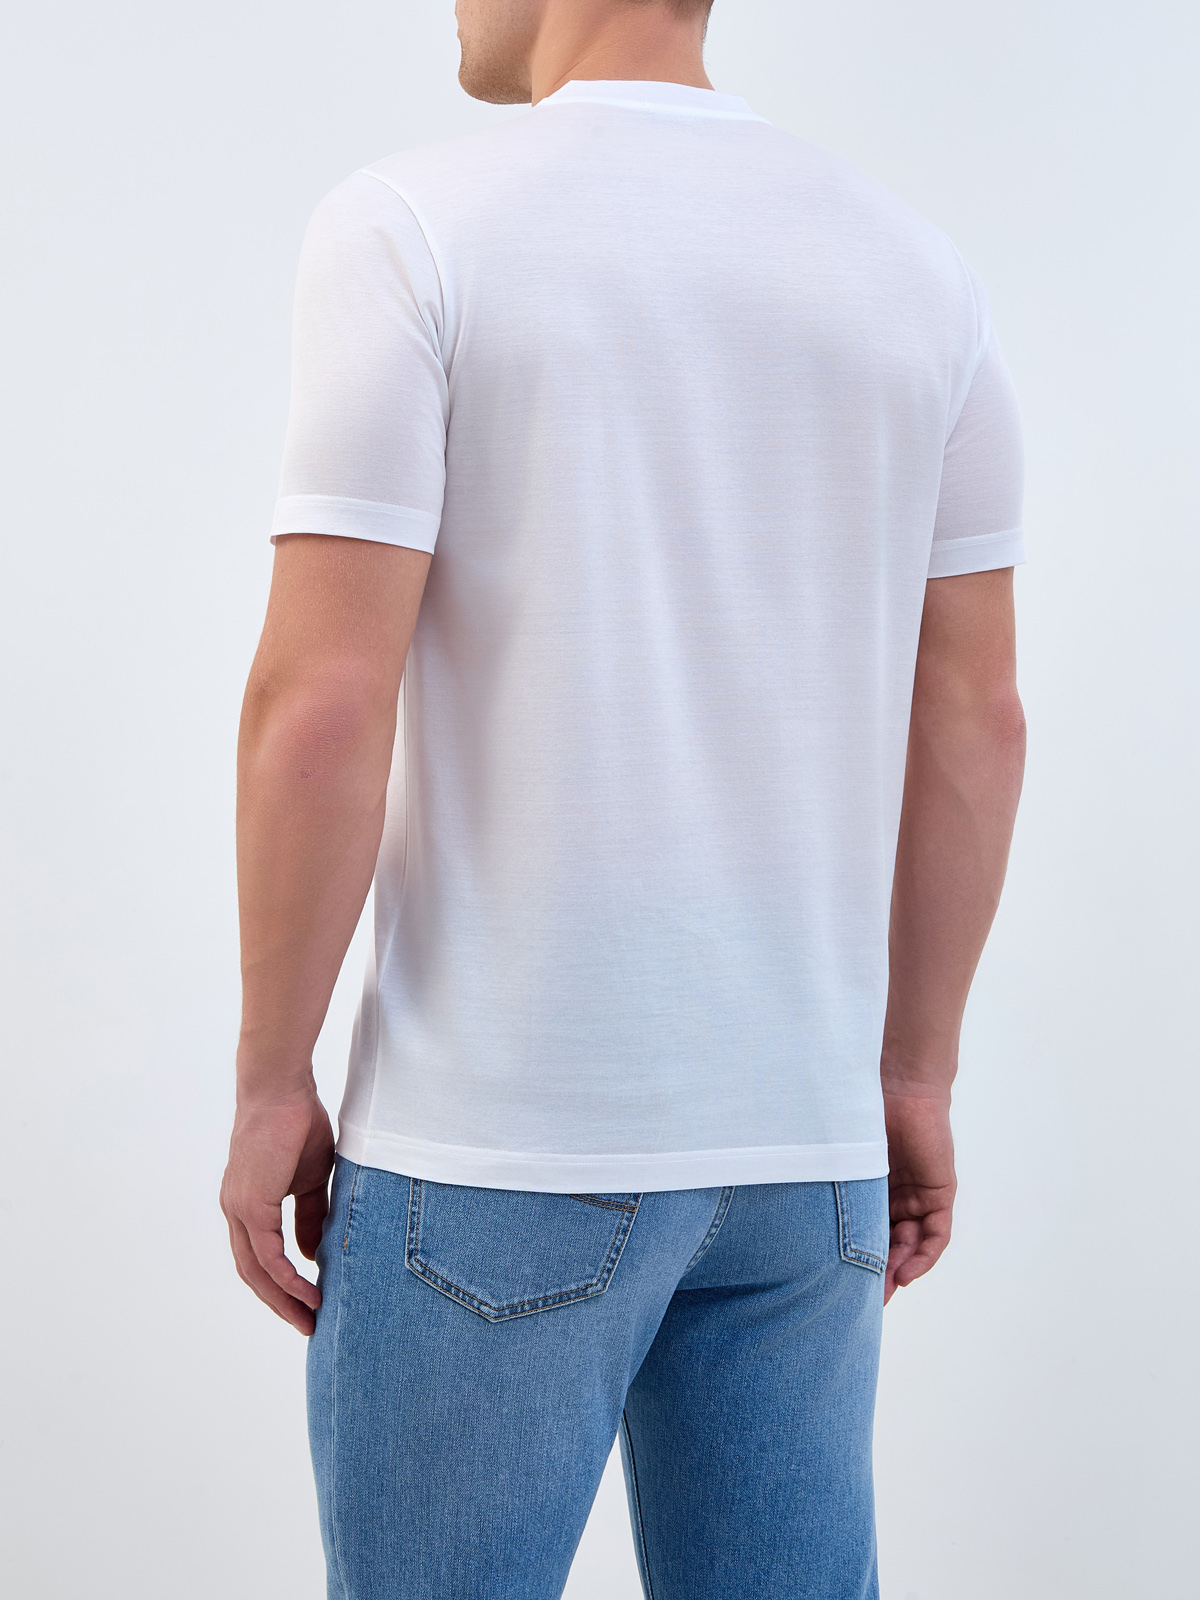 Базовая футболка из хлопка с вышитым логотипом в тон BERTOLO, цвет белый, размер 48;50;52;54;56 - фото 4